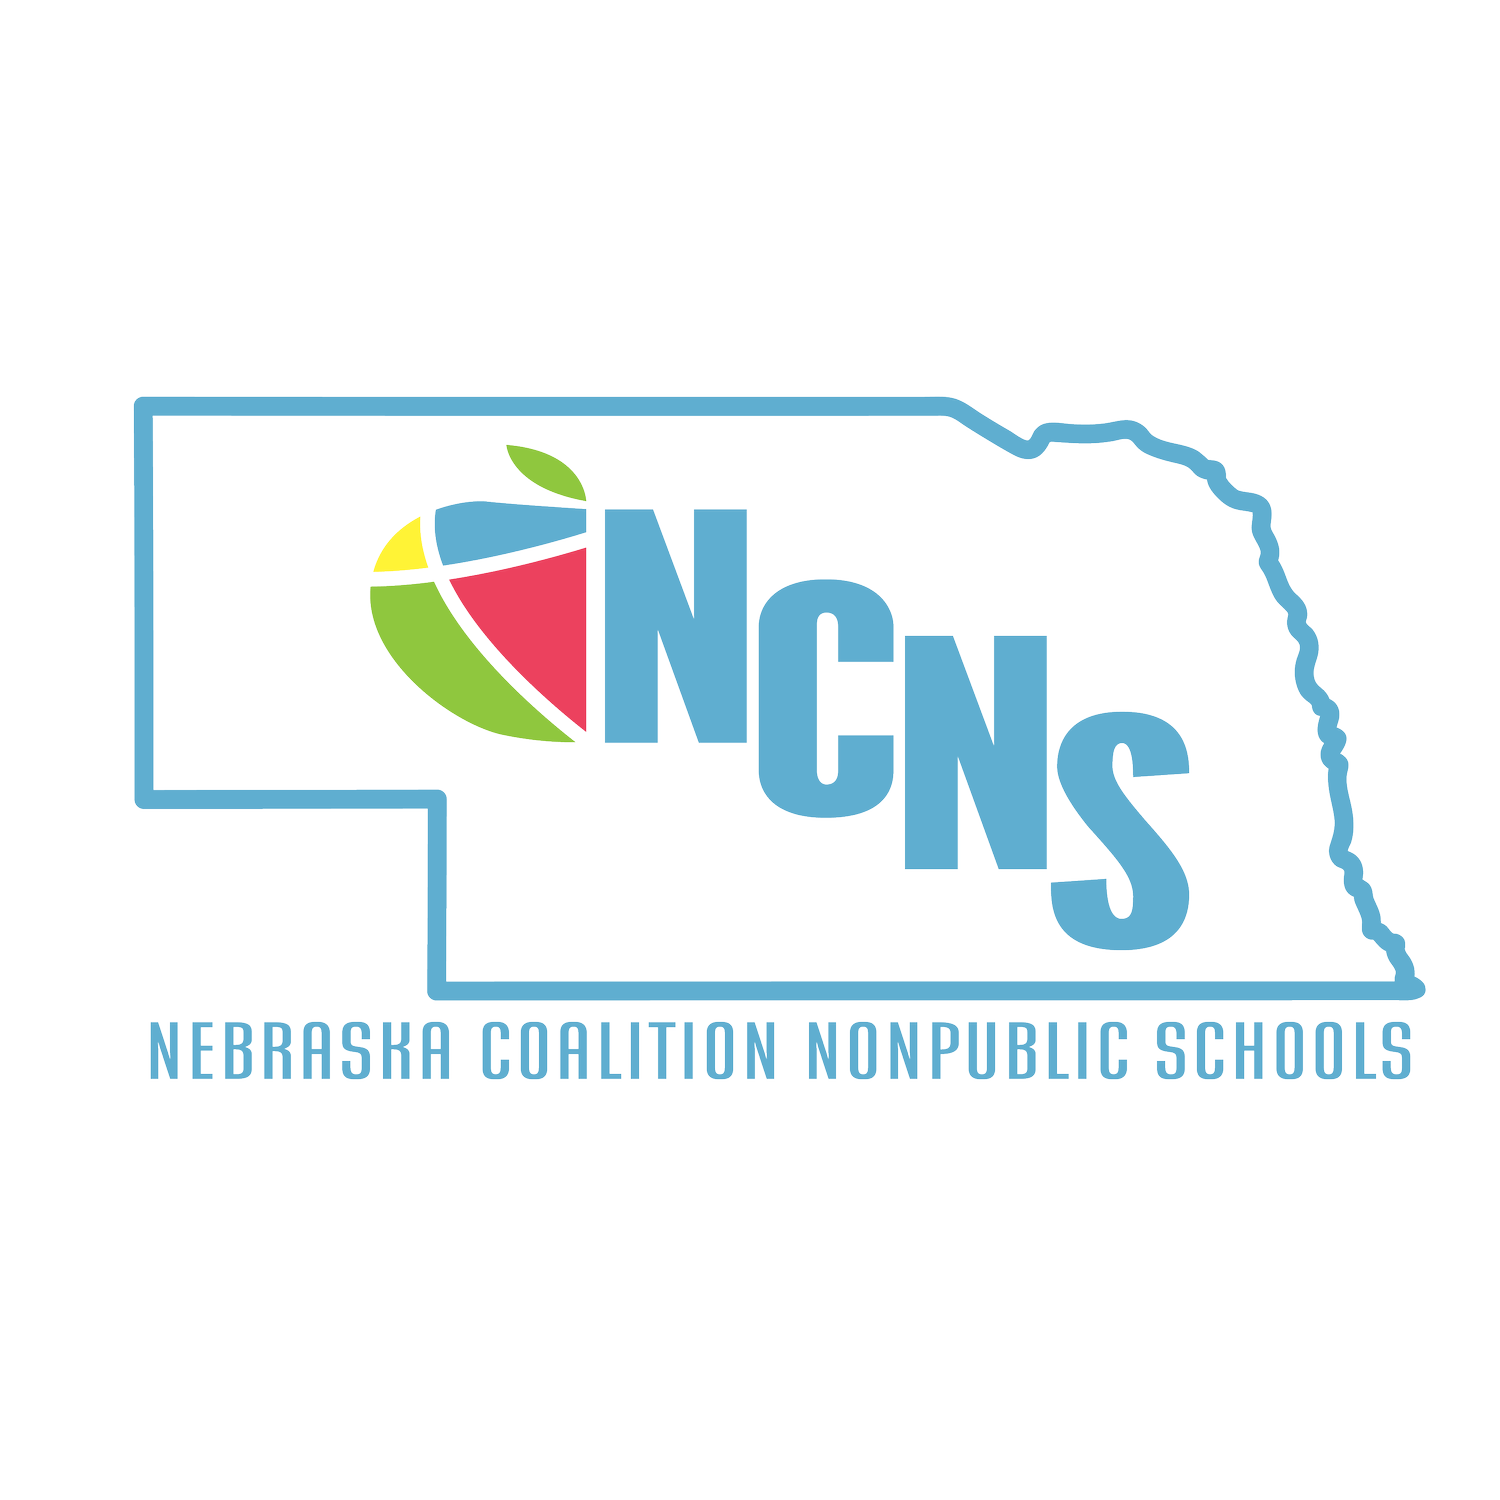 NCNS: Nebraska Coalition Nonpublic Schools